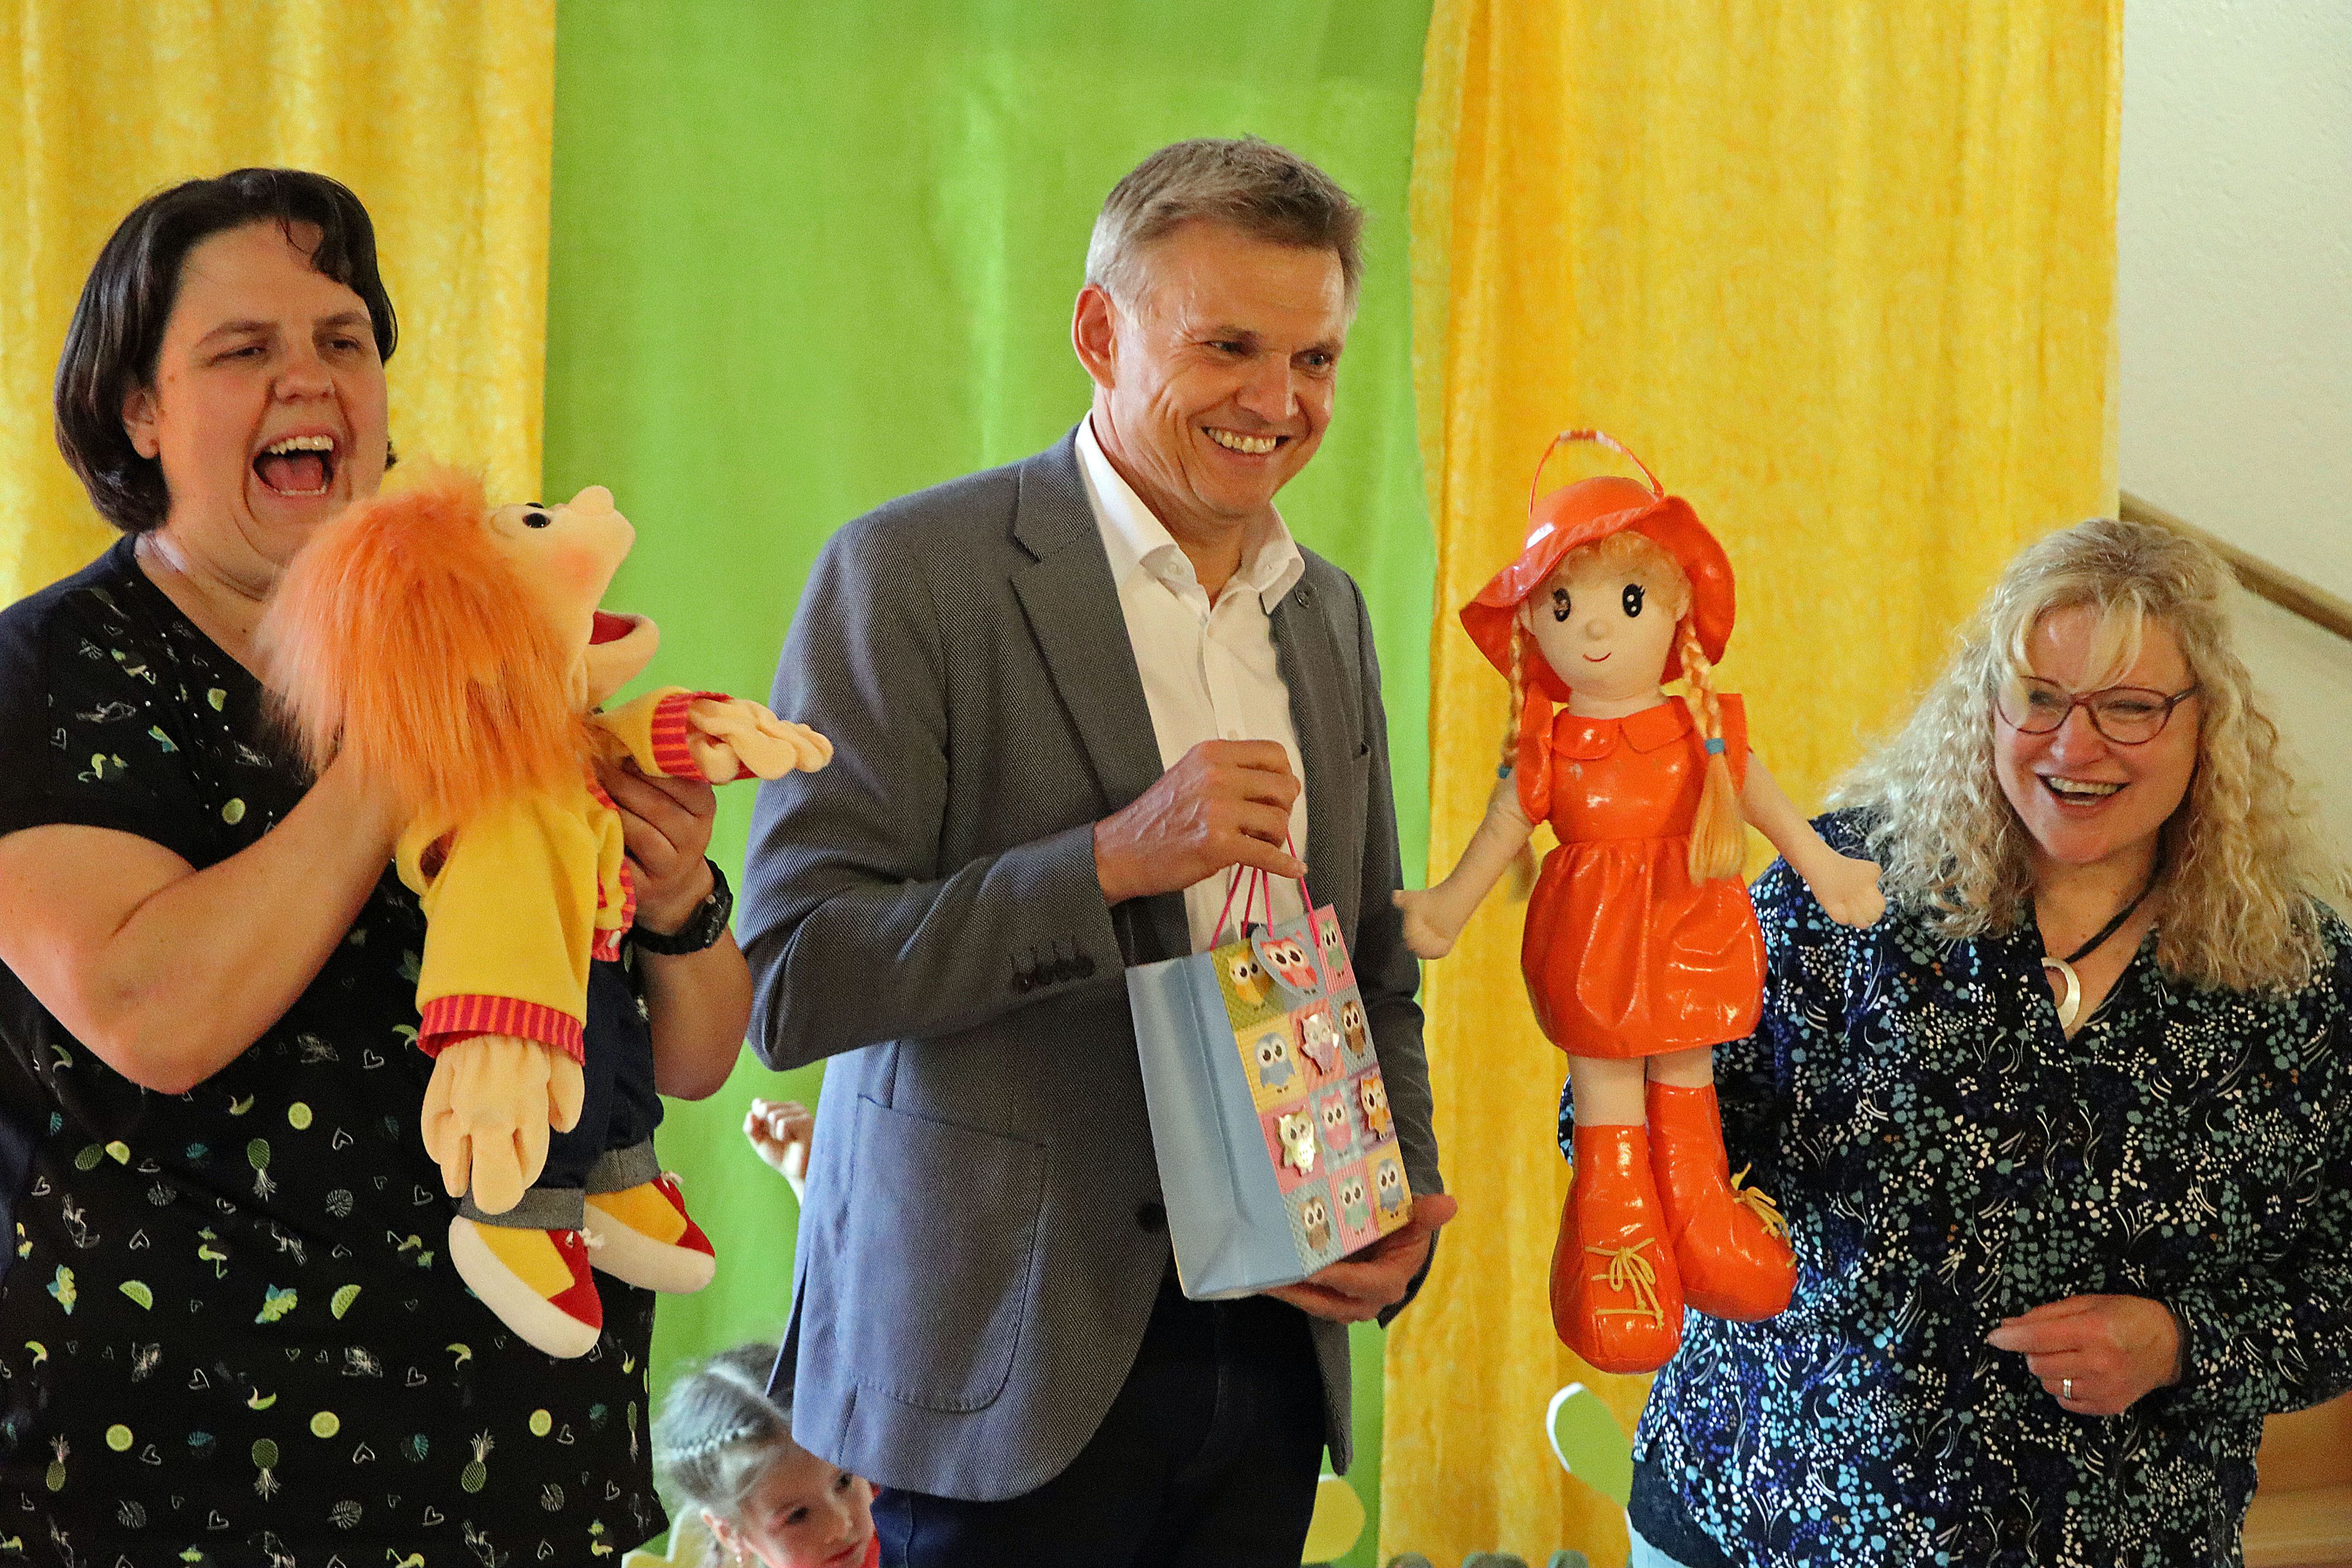 In der Mitte steht ein Mann mit einem Geschenk in der Hand. Es ist der Bürgermeister der Stadt Sonneberg. Links und rechts von ihm steht eine Frau. Sie haben Puppen in der Hand.